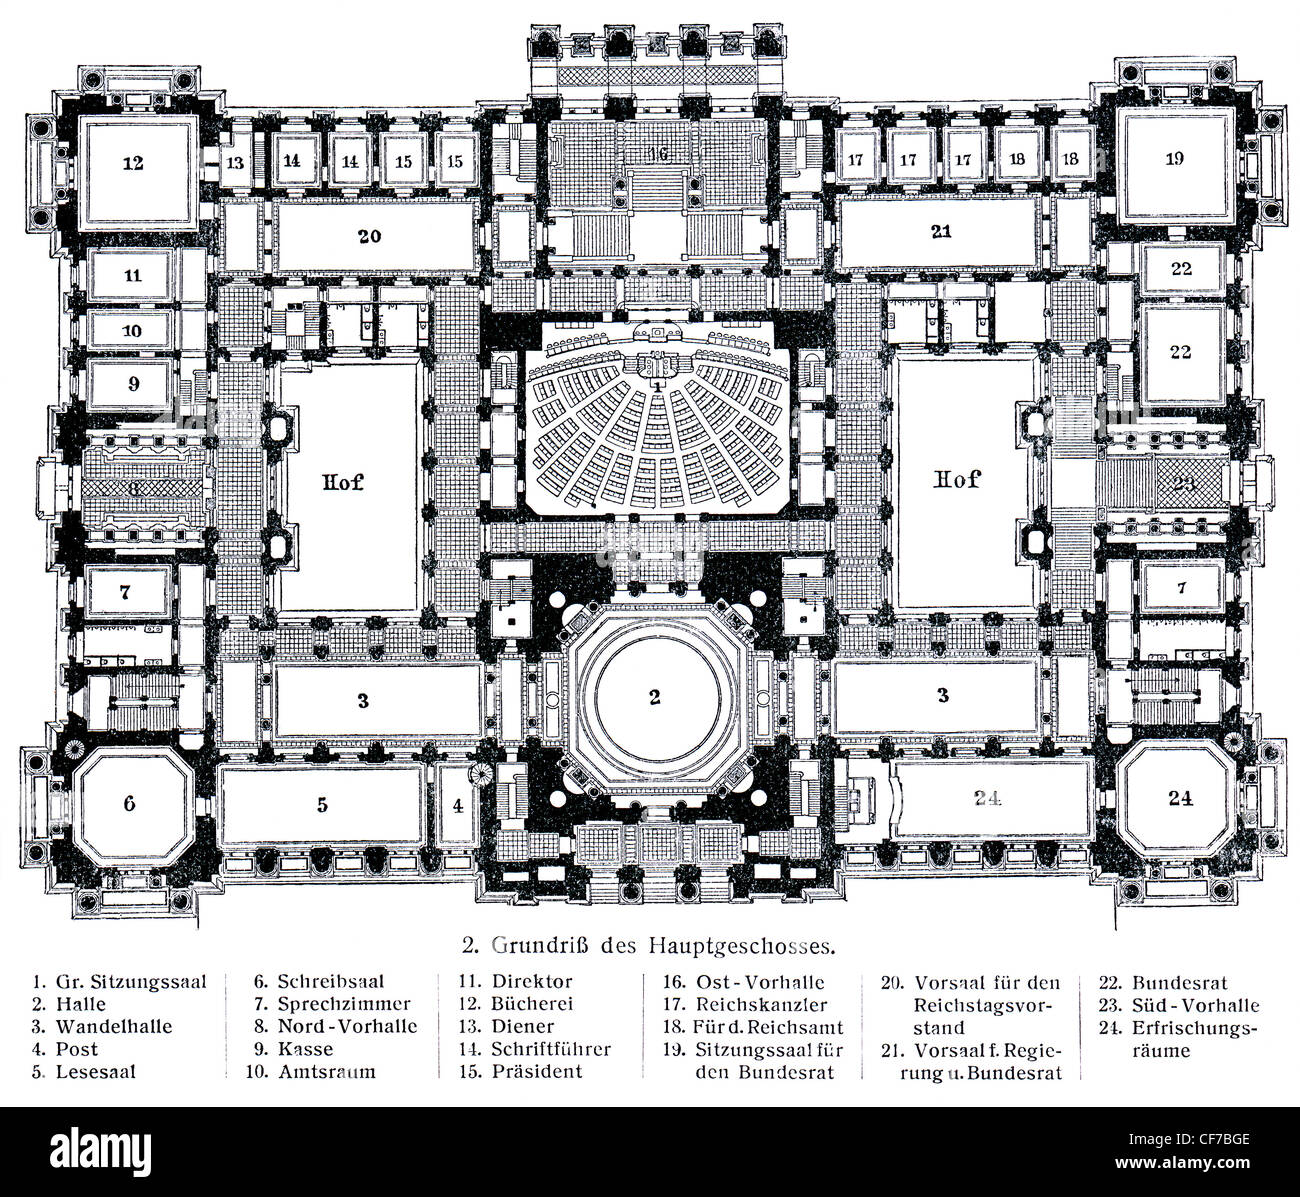 Un layout schematico Reichstag. Pubblicazione del libro "eyers Konversations-Lexikon", volume 7, Lipsia, Germania, 1910 Foto Stock